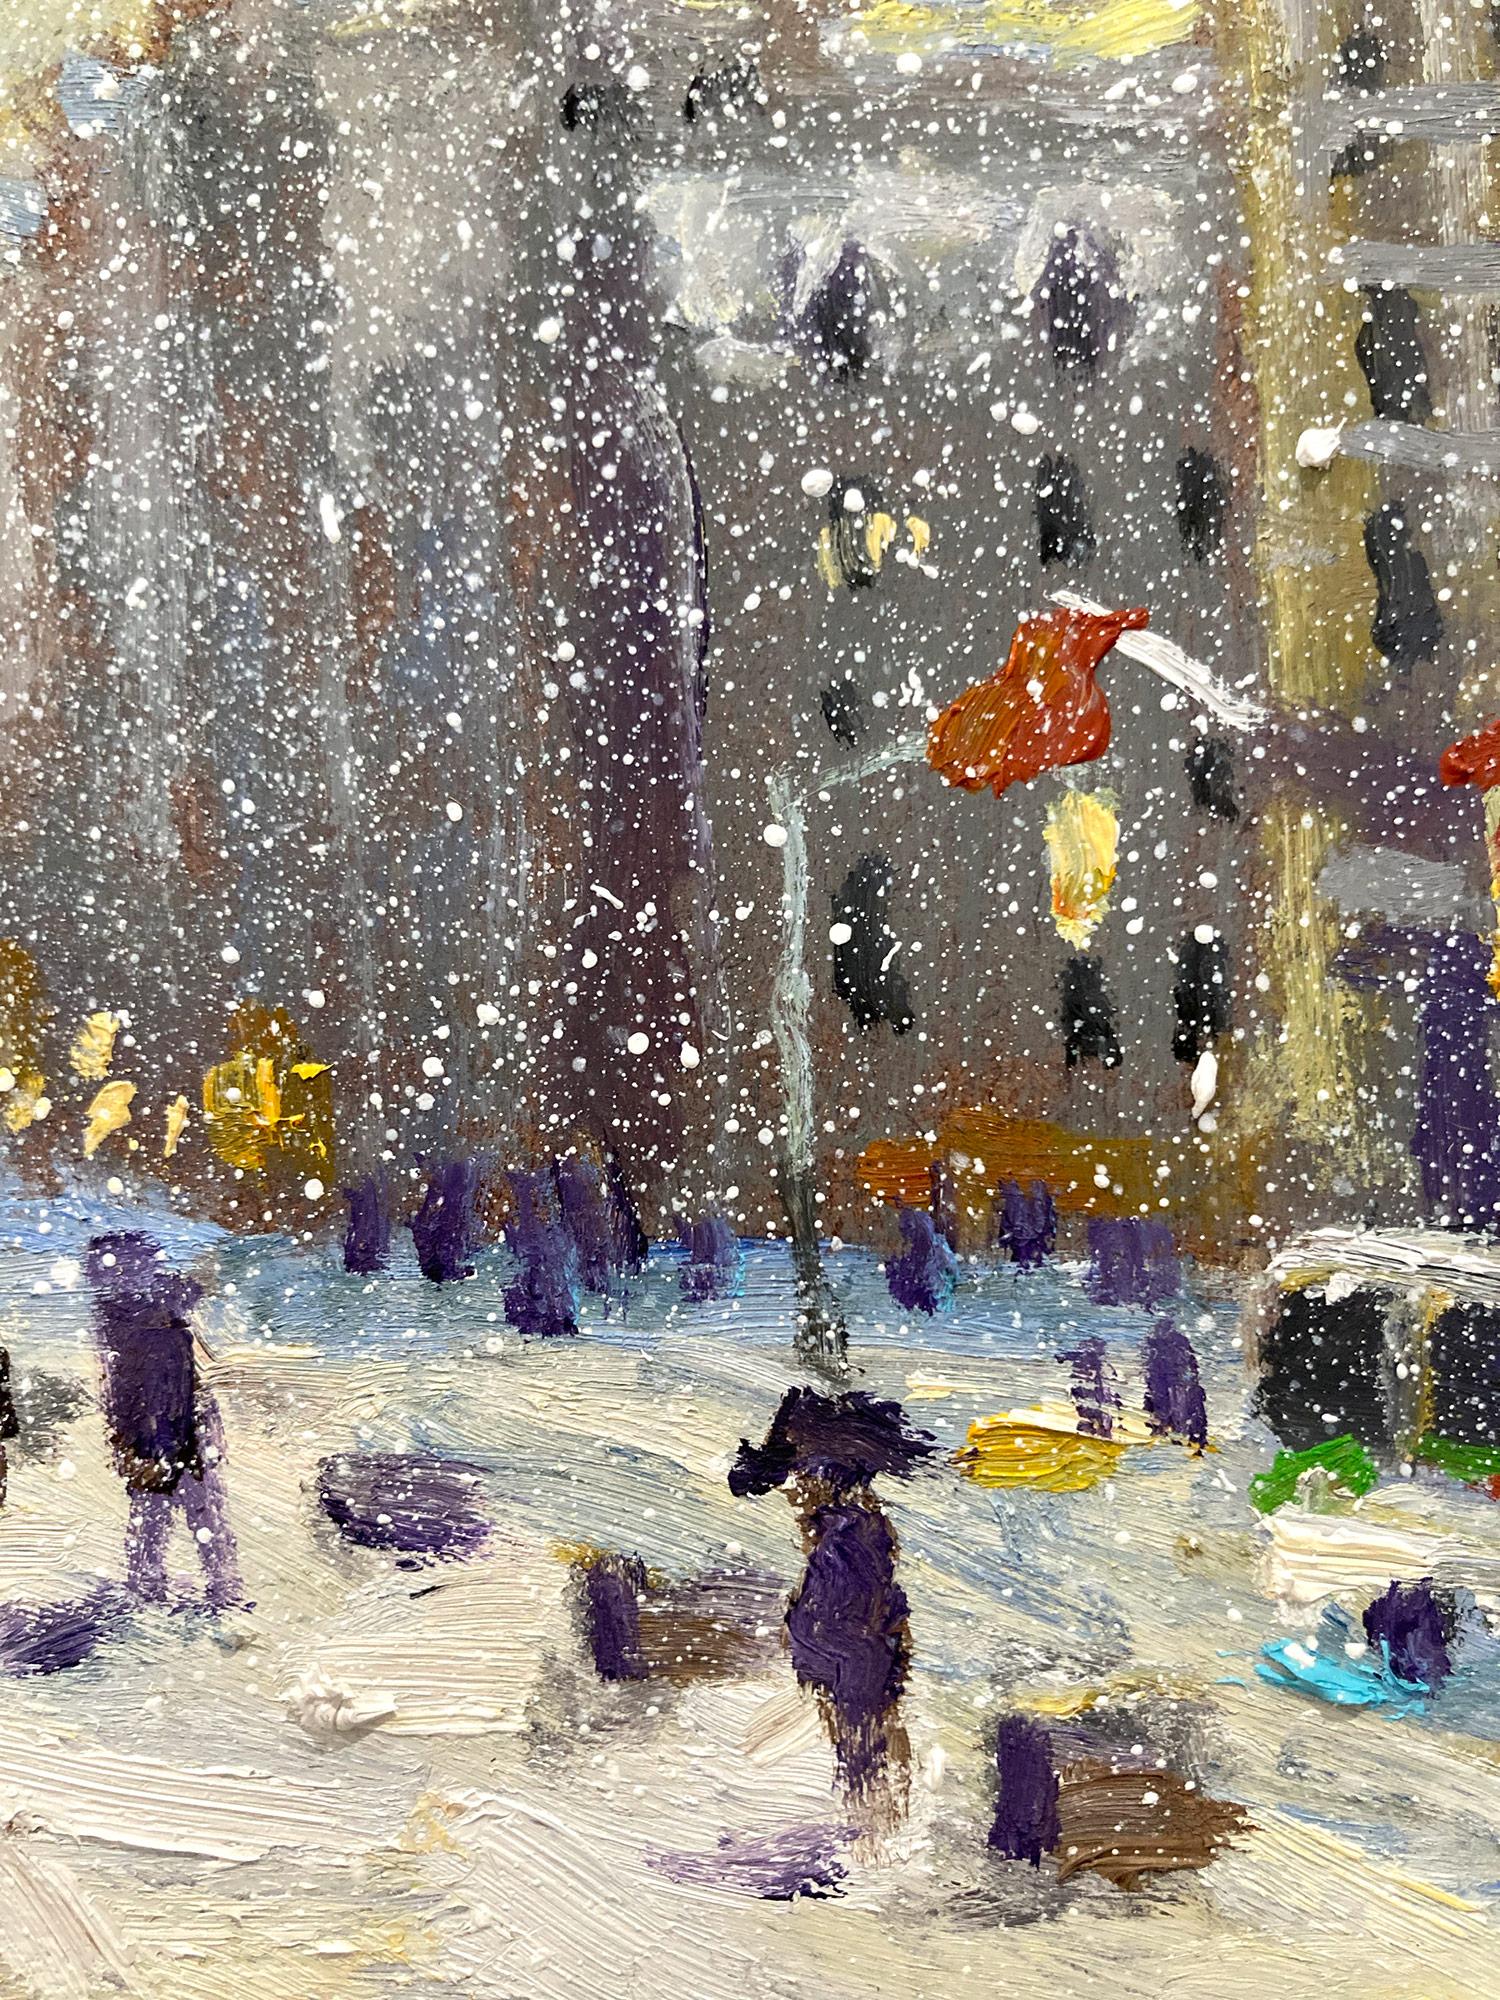 Impressionistische New York City Winter-Stadtszene, die Flatiron bei Sonnenuntergang in New York City zeigt. Autos und Fußgänger sind auf eine sehr intime und doch energische Weise gemalt. Christophe ist bekannt dafür, die Schönheit und Einfachheit